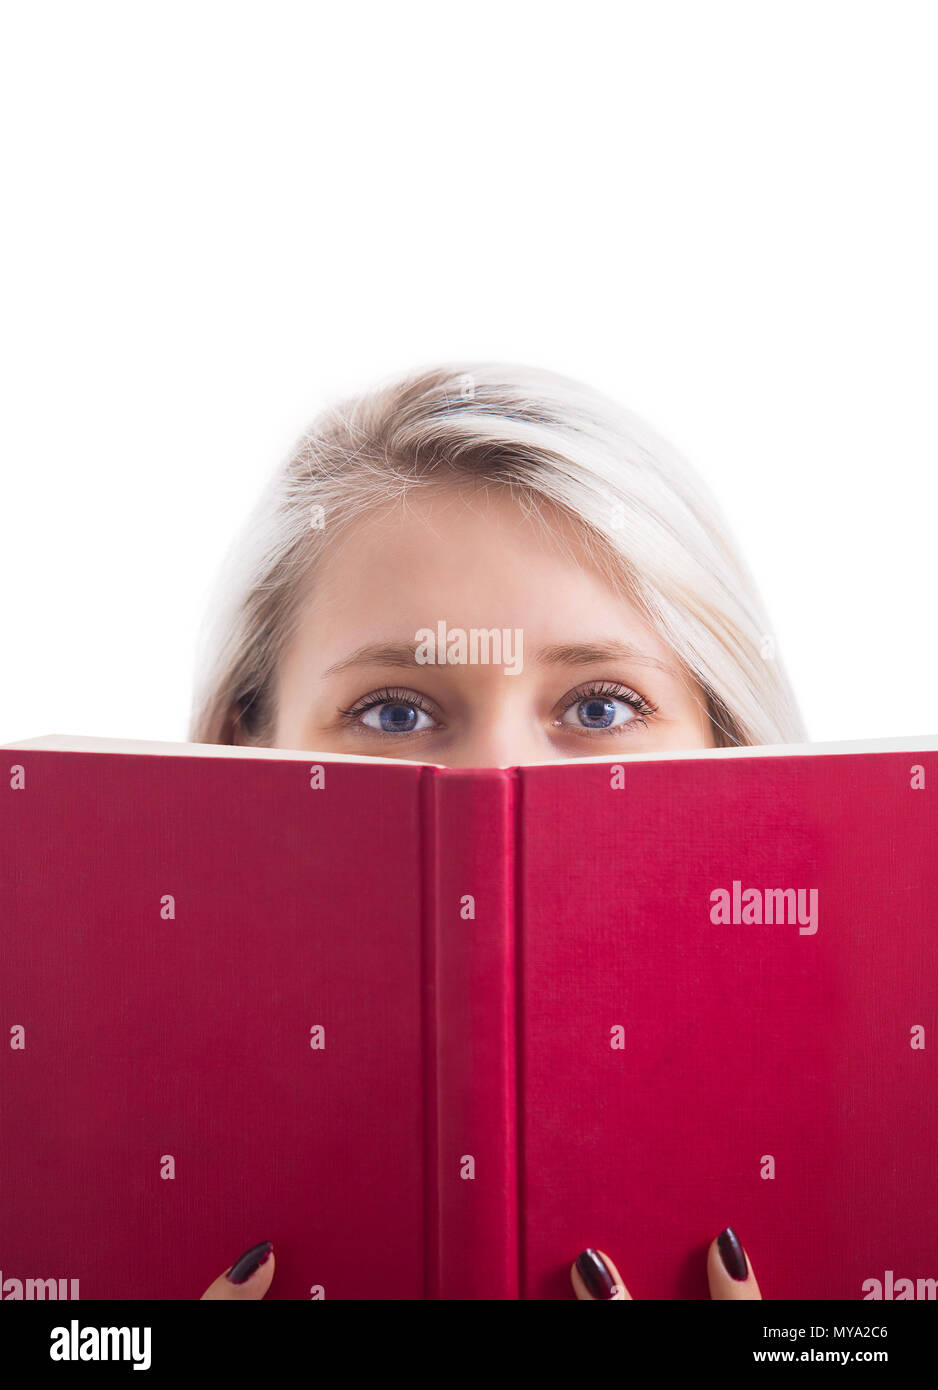 Close up portrait of pretty student girl se cacher derrière un livre ouvert rouge isolé sur fond blanc. Femme timide et mystérieux. Educ Banque D'Images